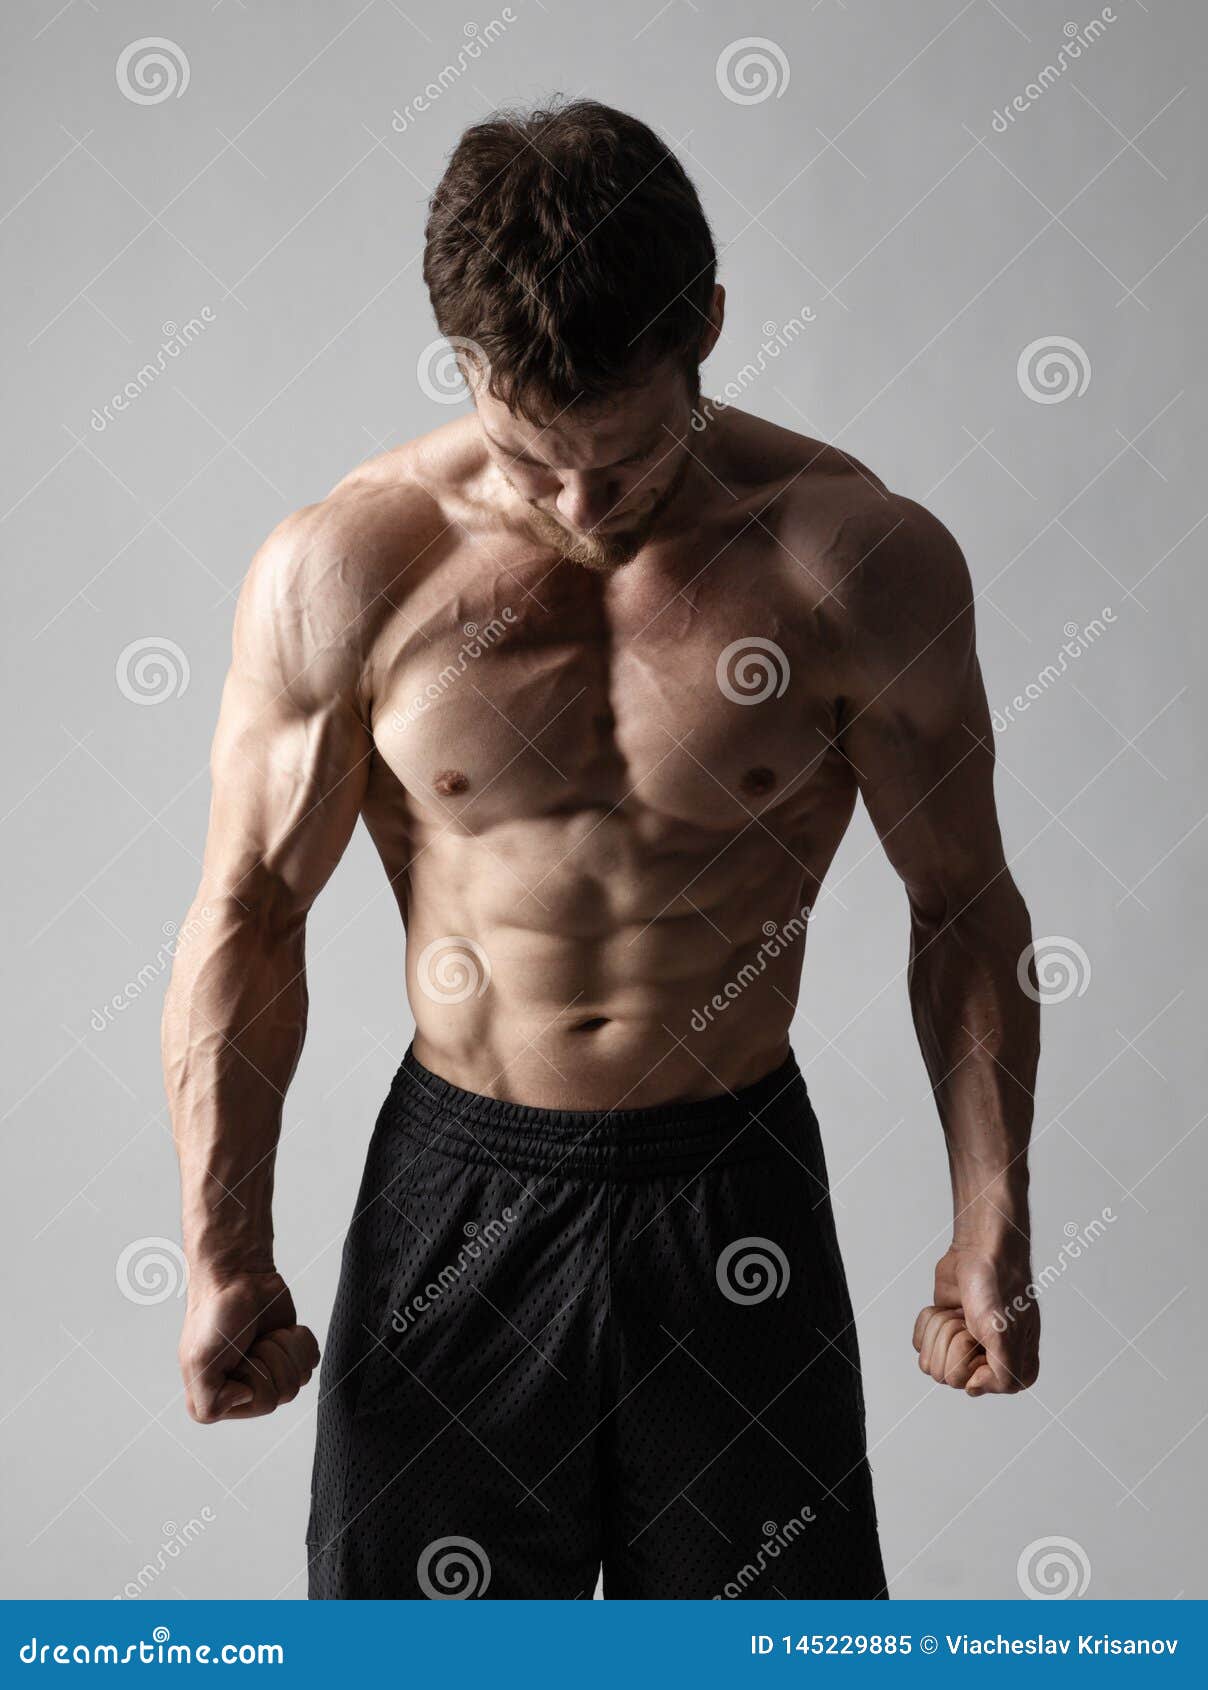 Shirtless Senior Man Gesturing Showing Body Stock Photo 